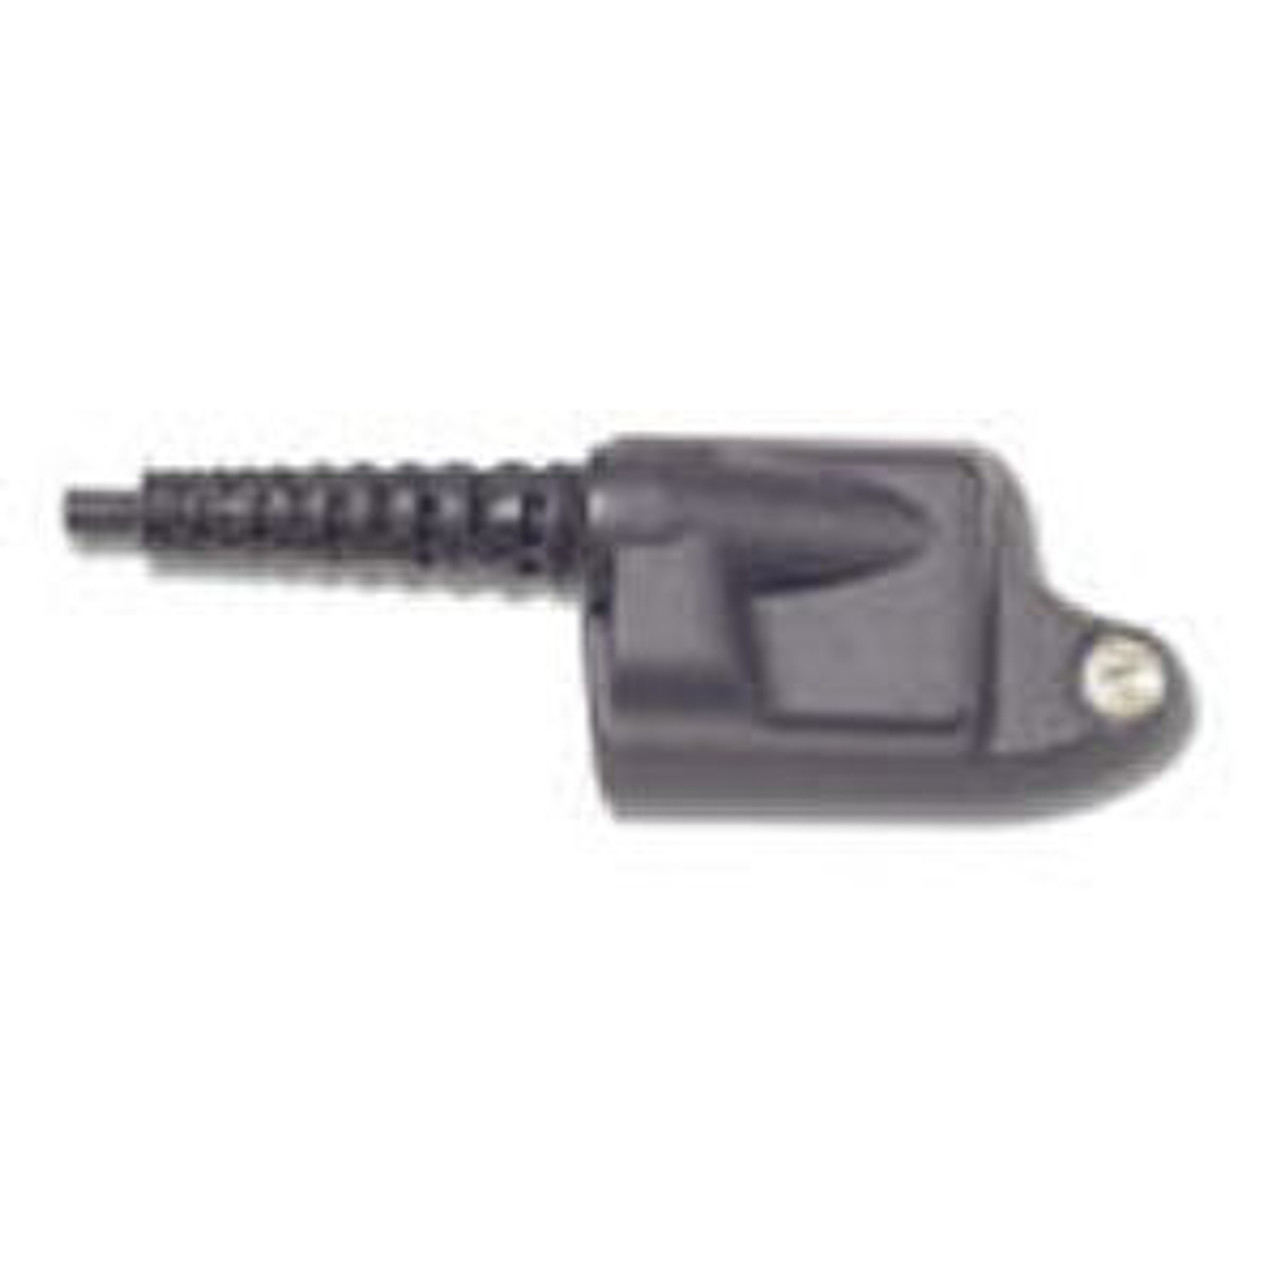 M/A-Com P5150 3-Wire/3.5mm Female Surveillance Kit